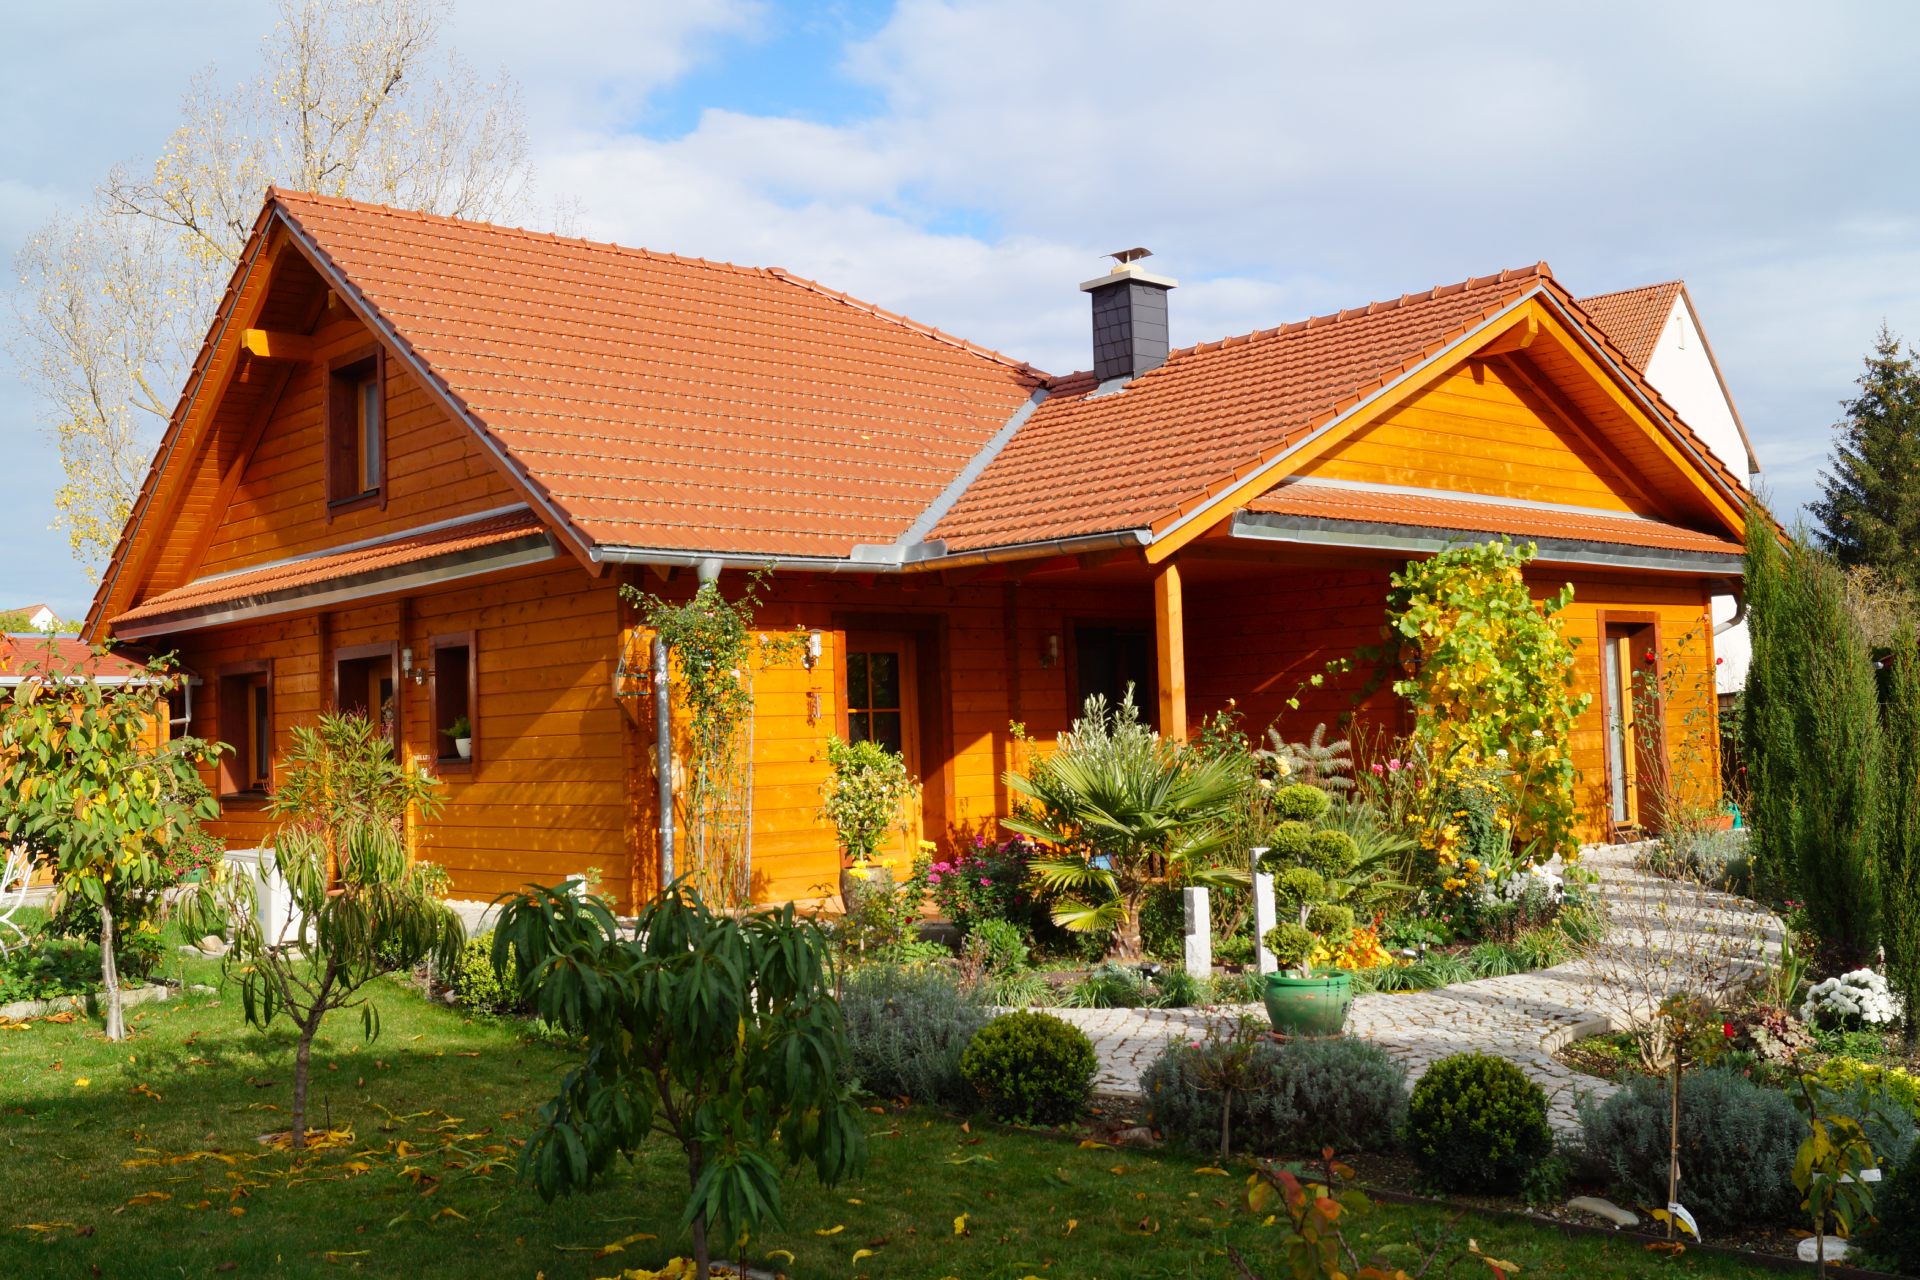 Holzhaus von Finnholz mit rotem Dach, umgeben von einer vielfältigen Gartenlandschaft.